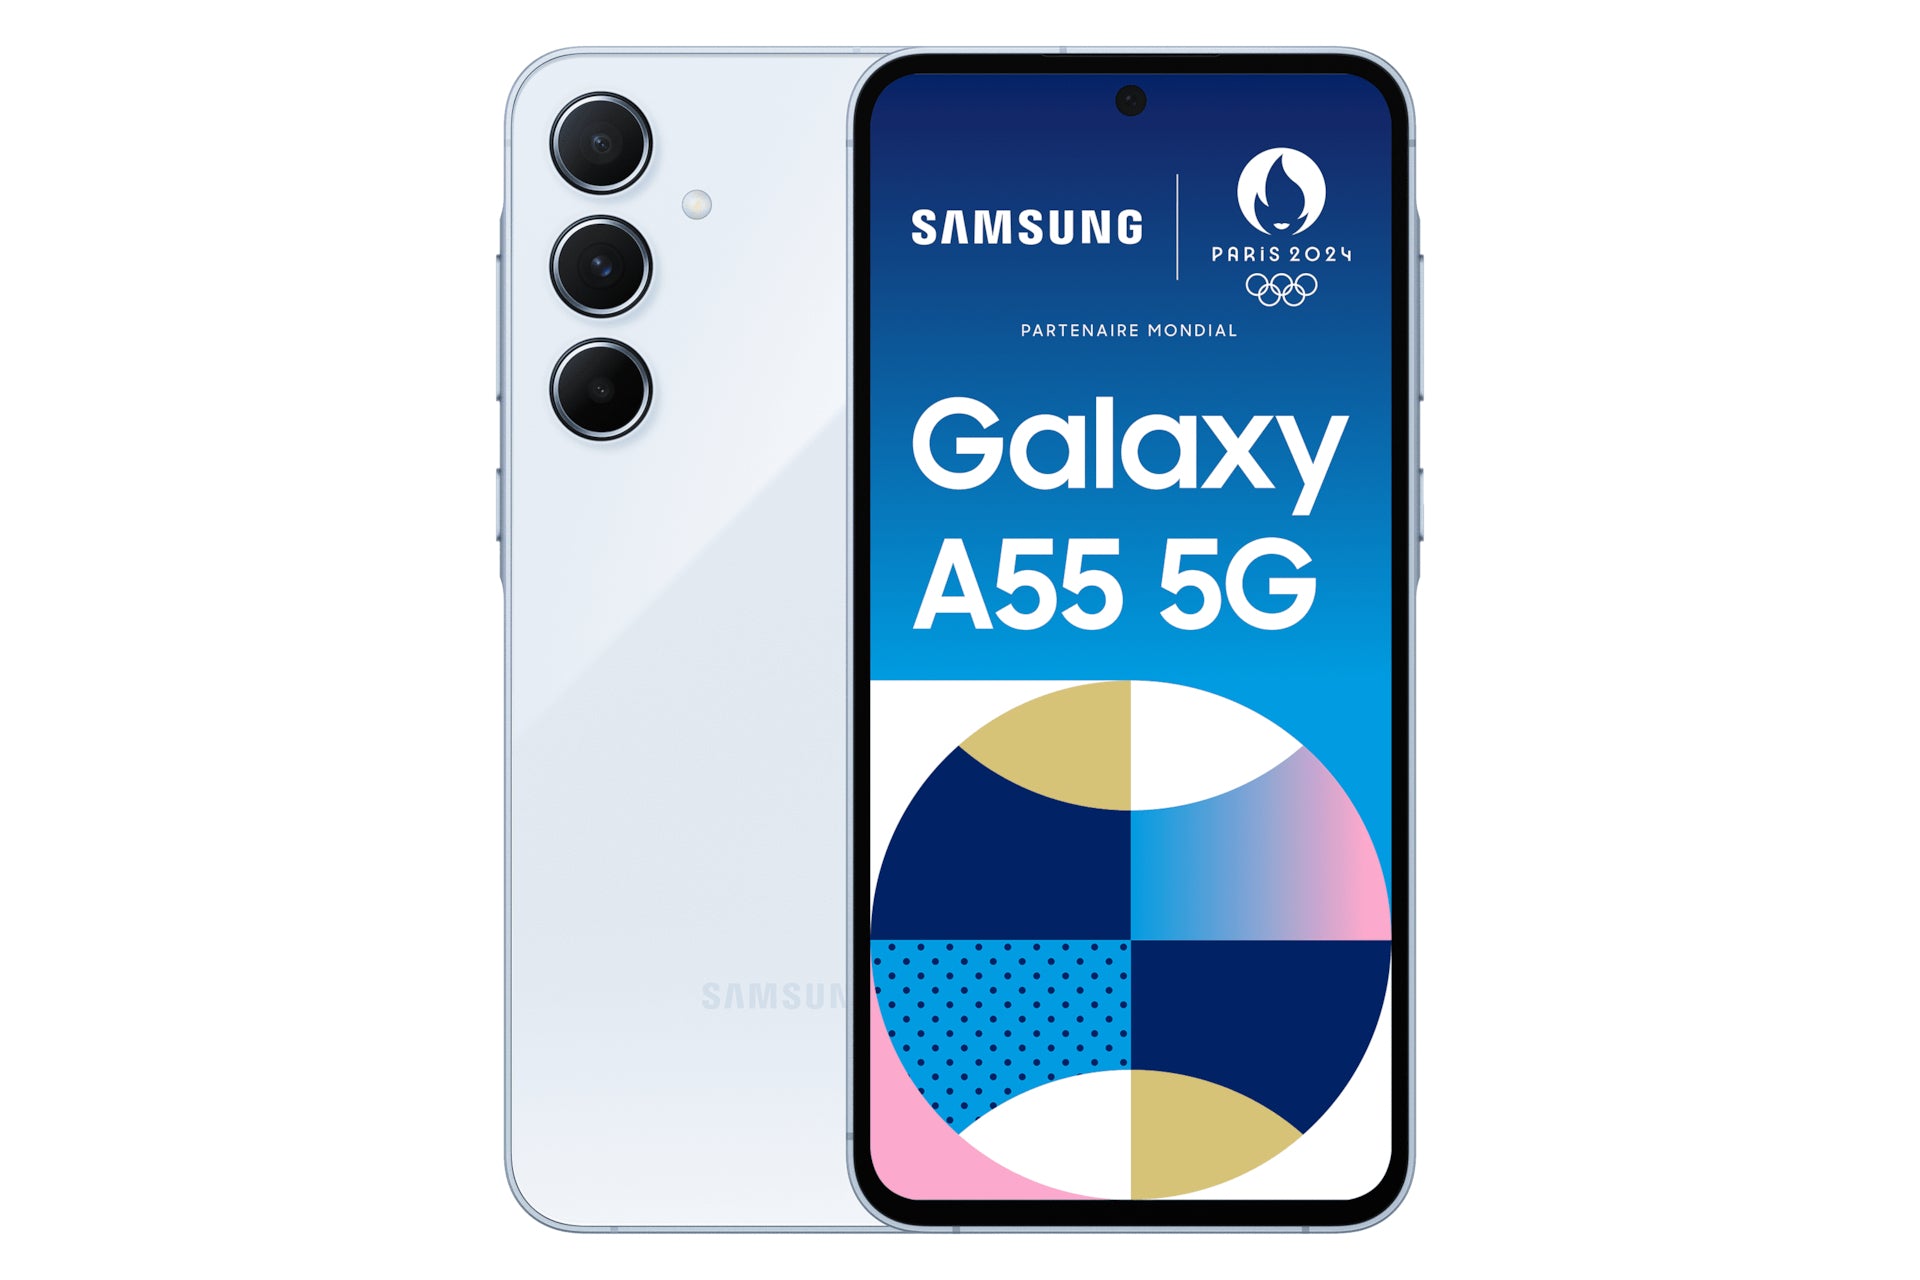 SAMSUNG GALAXY A55 5G LIGHT BLUE 256GB